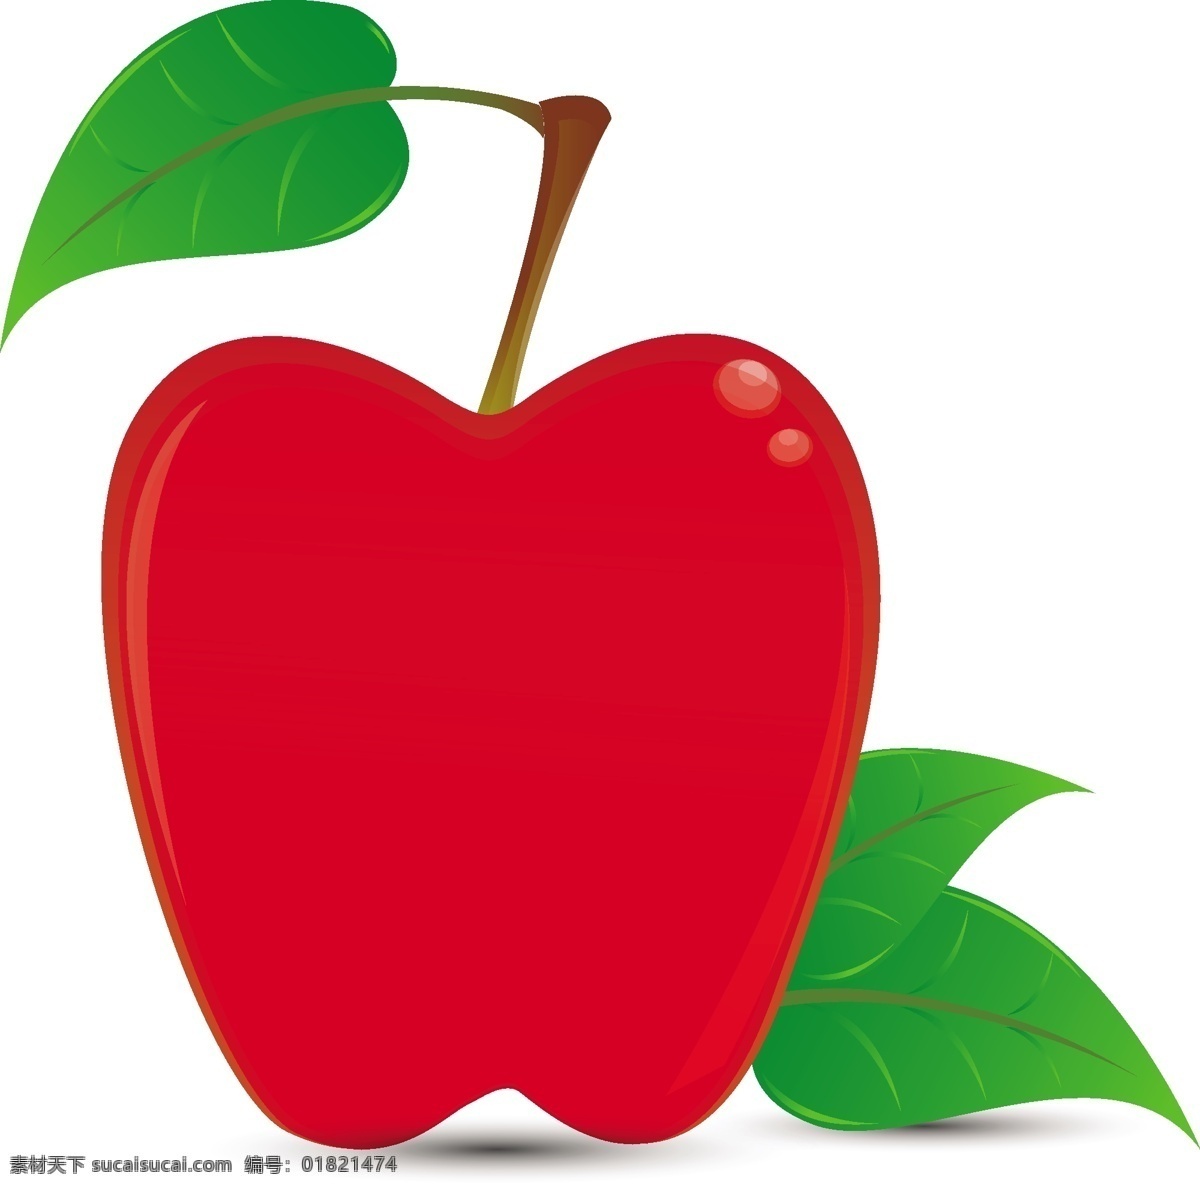 红苹果 红色 苹果 红苹果矢量 自由 载体 红苹果背景 红苹果边境 矢量红苹果叶 矢量 艺术 红苹果图标 标志 向量 红苹果eps 矢量图 其他矢量图